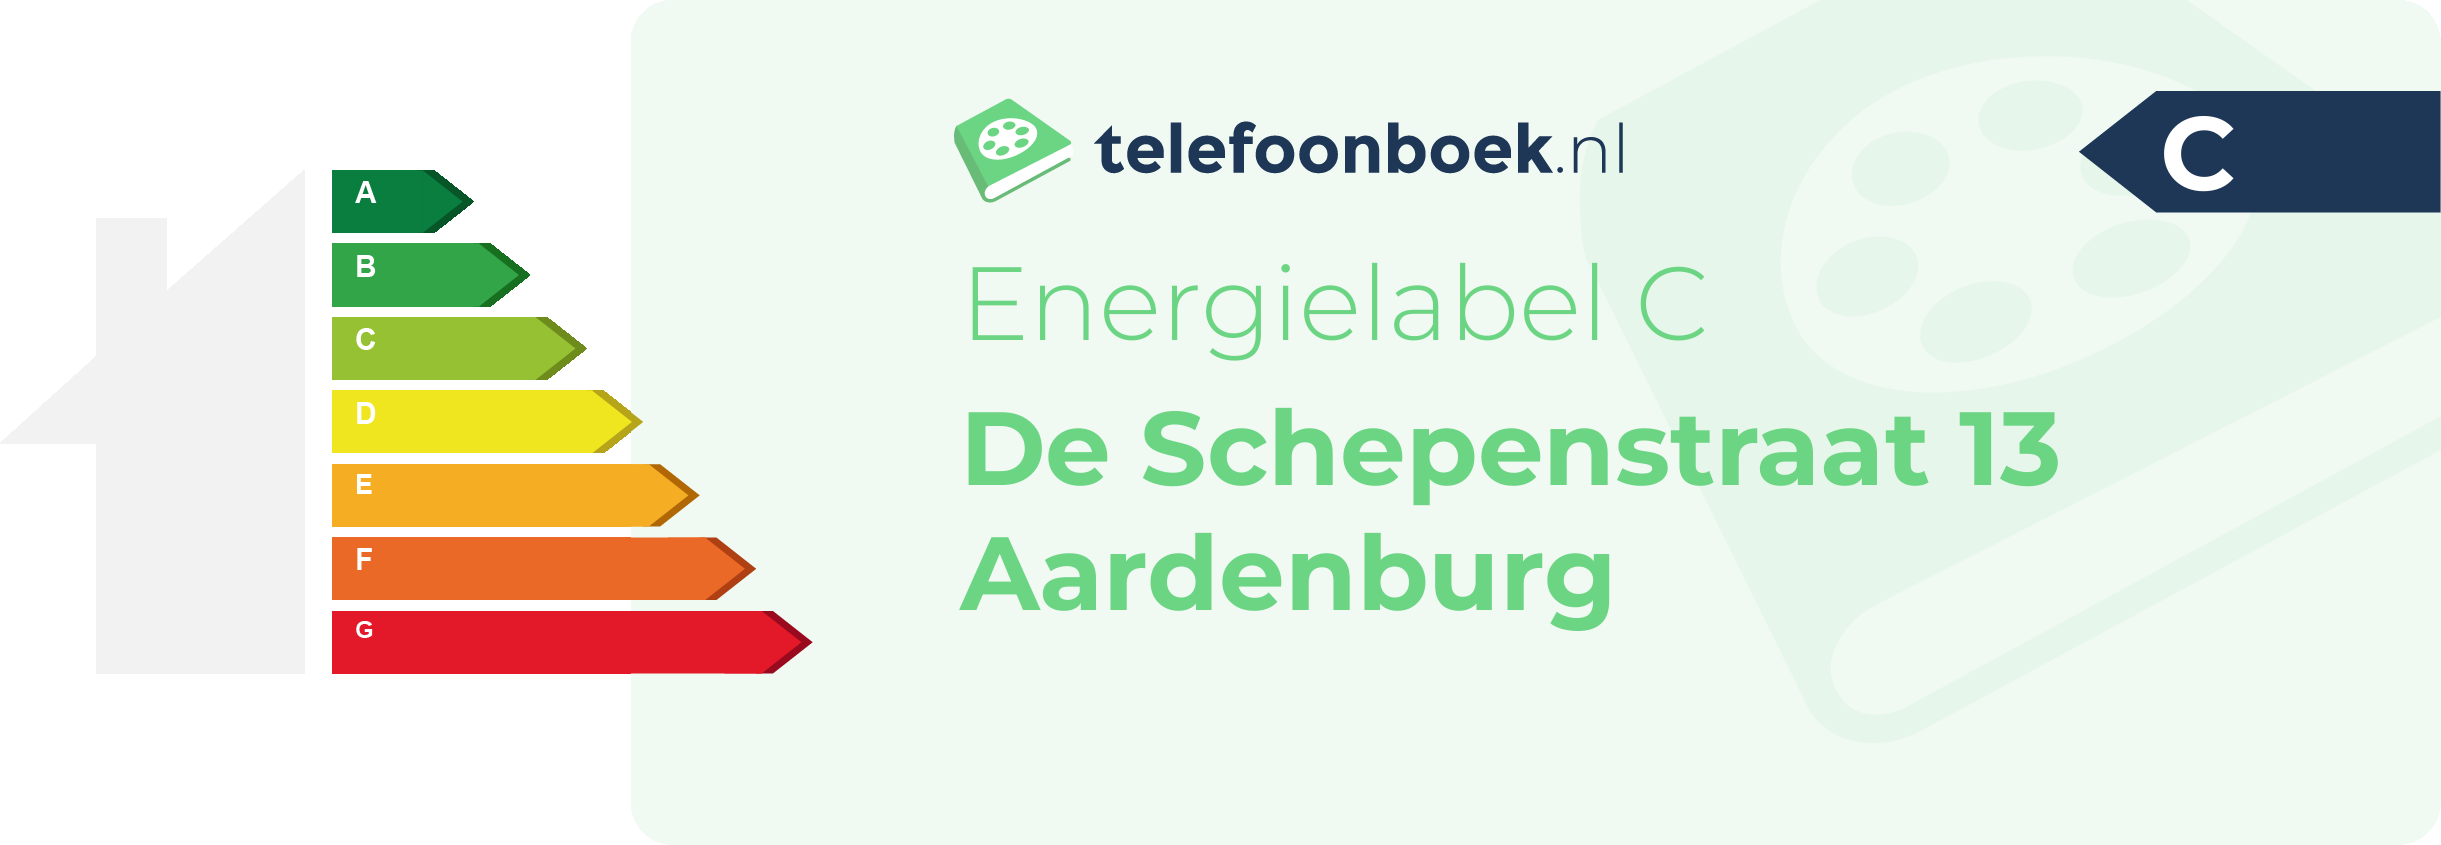 Energielabel De Schepenstraat 13 Aardenburg